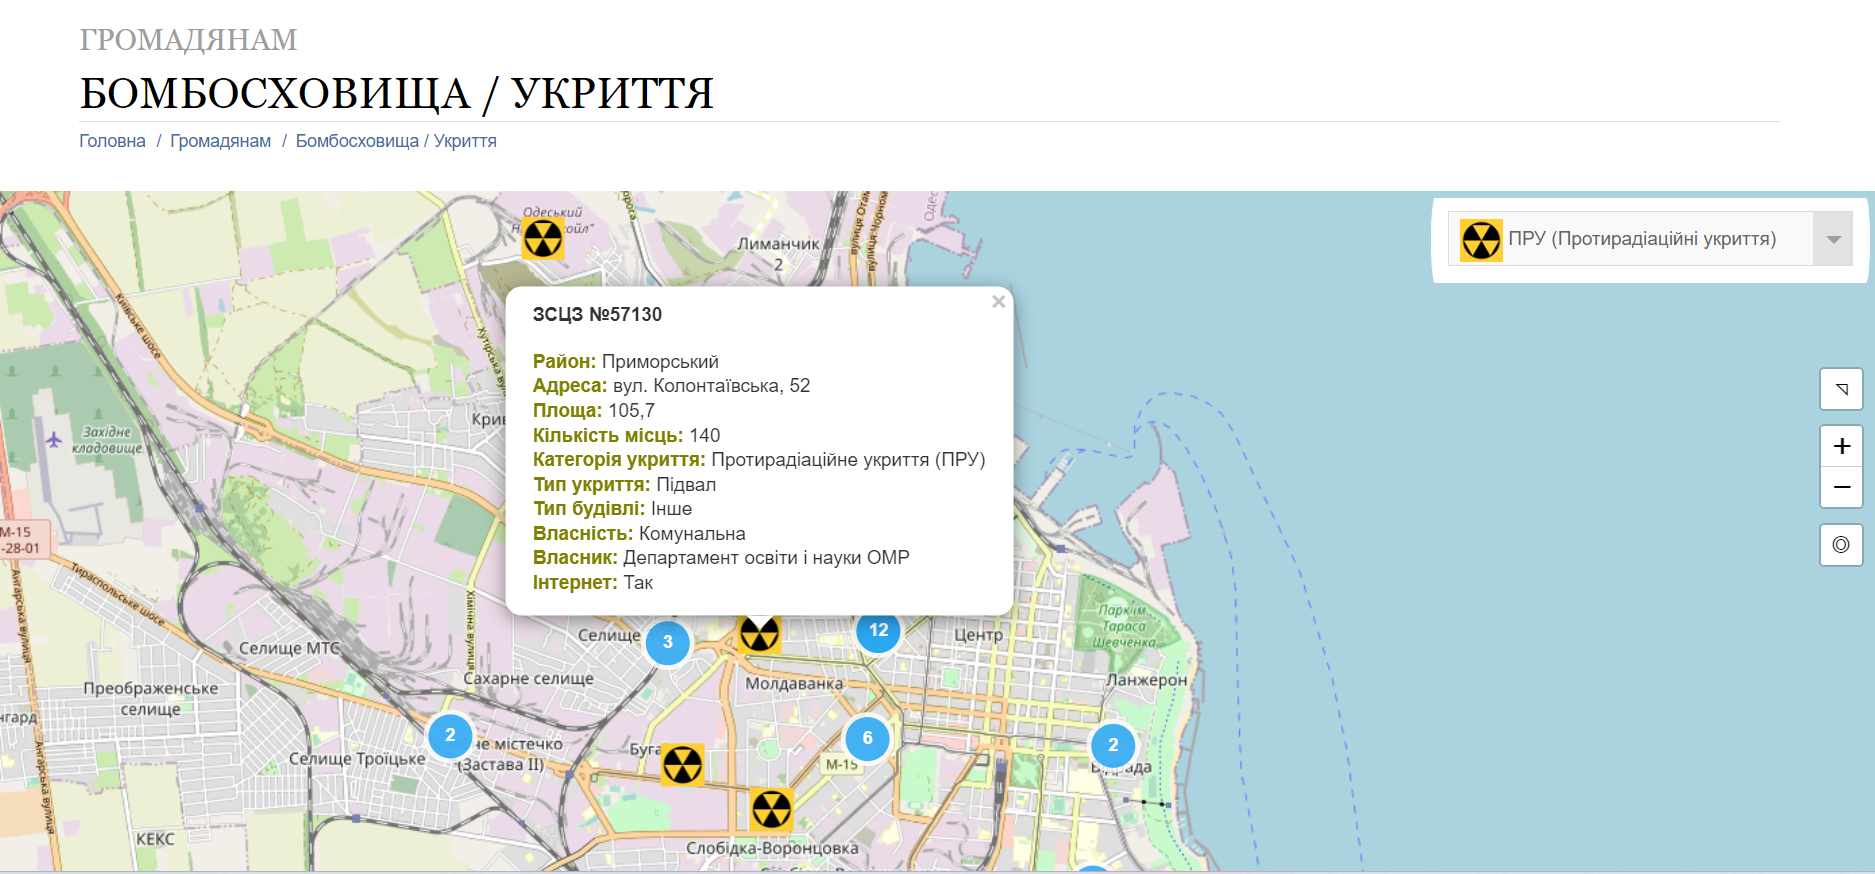 Скріншот з сайту Одеської міської ради